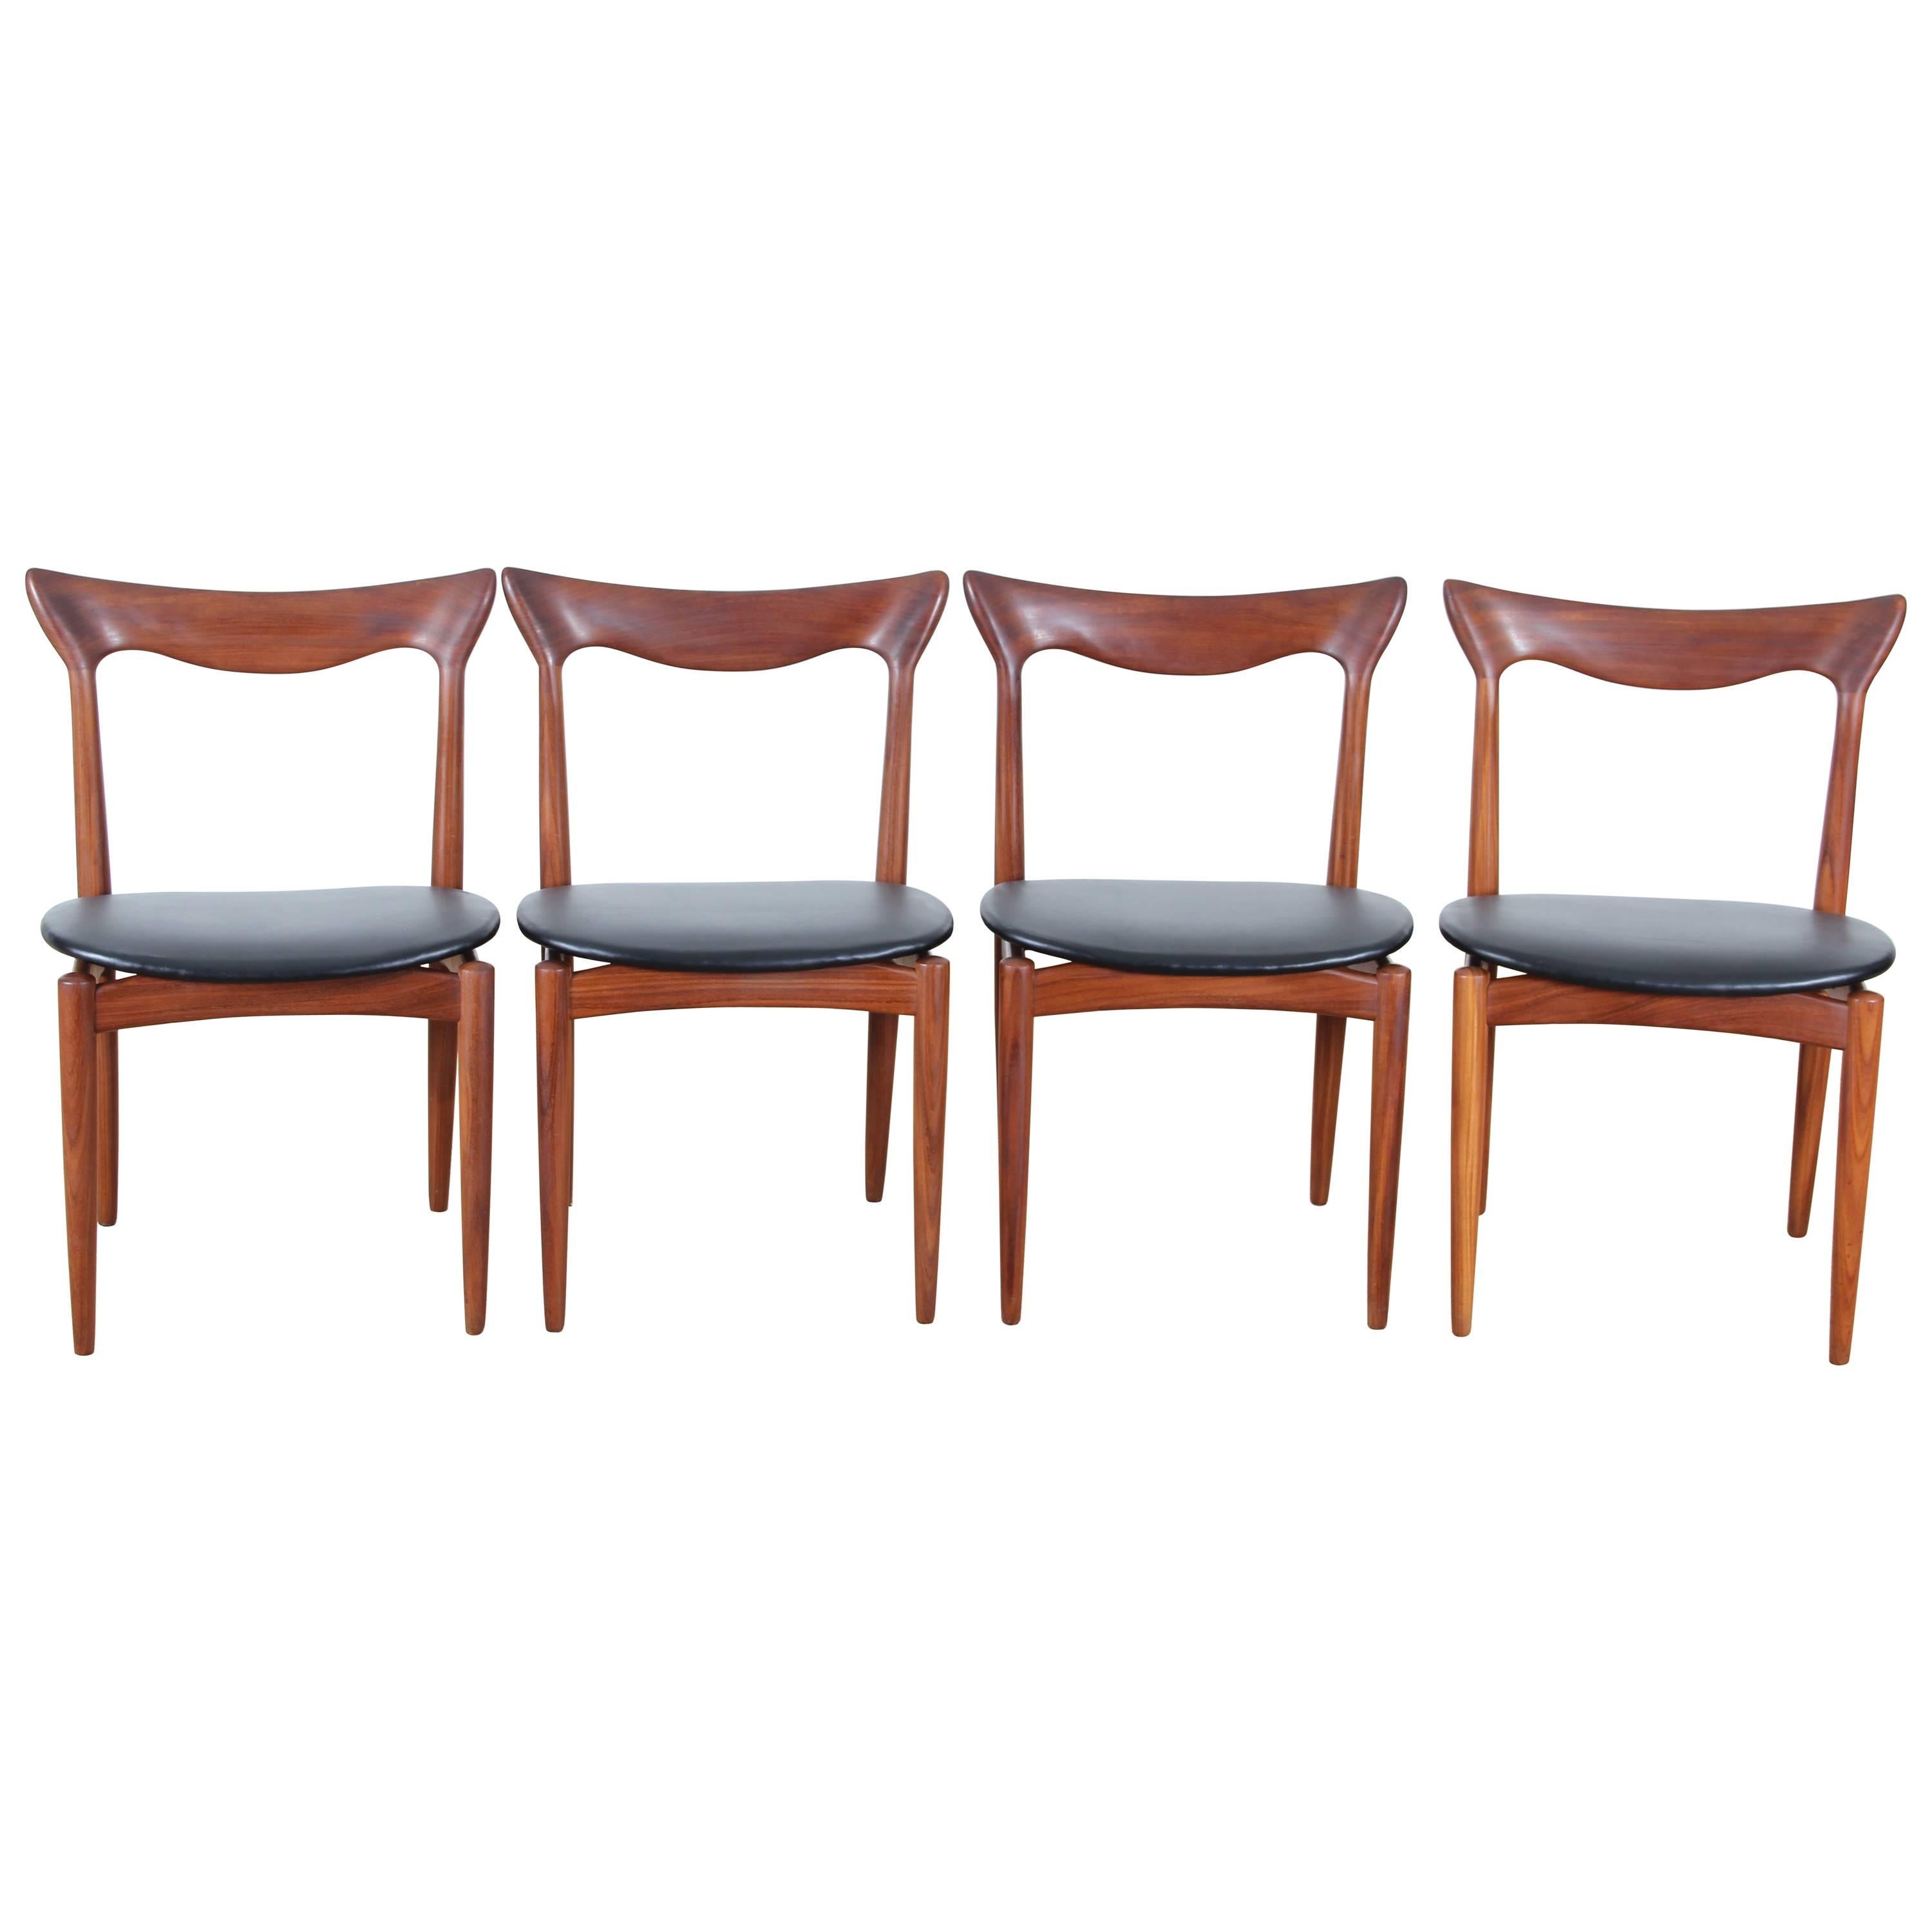 Satz von vier skandinavischen Stühlen aus Teakholz, entworfen von Henry Walter Klein